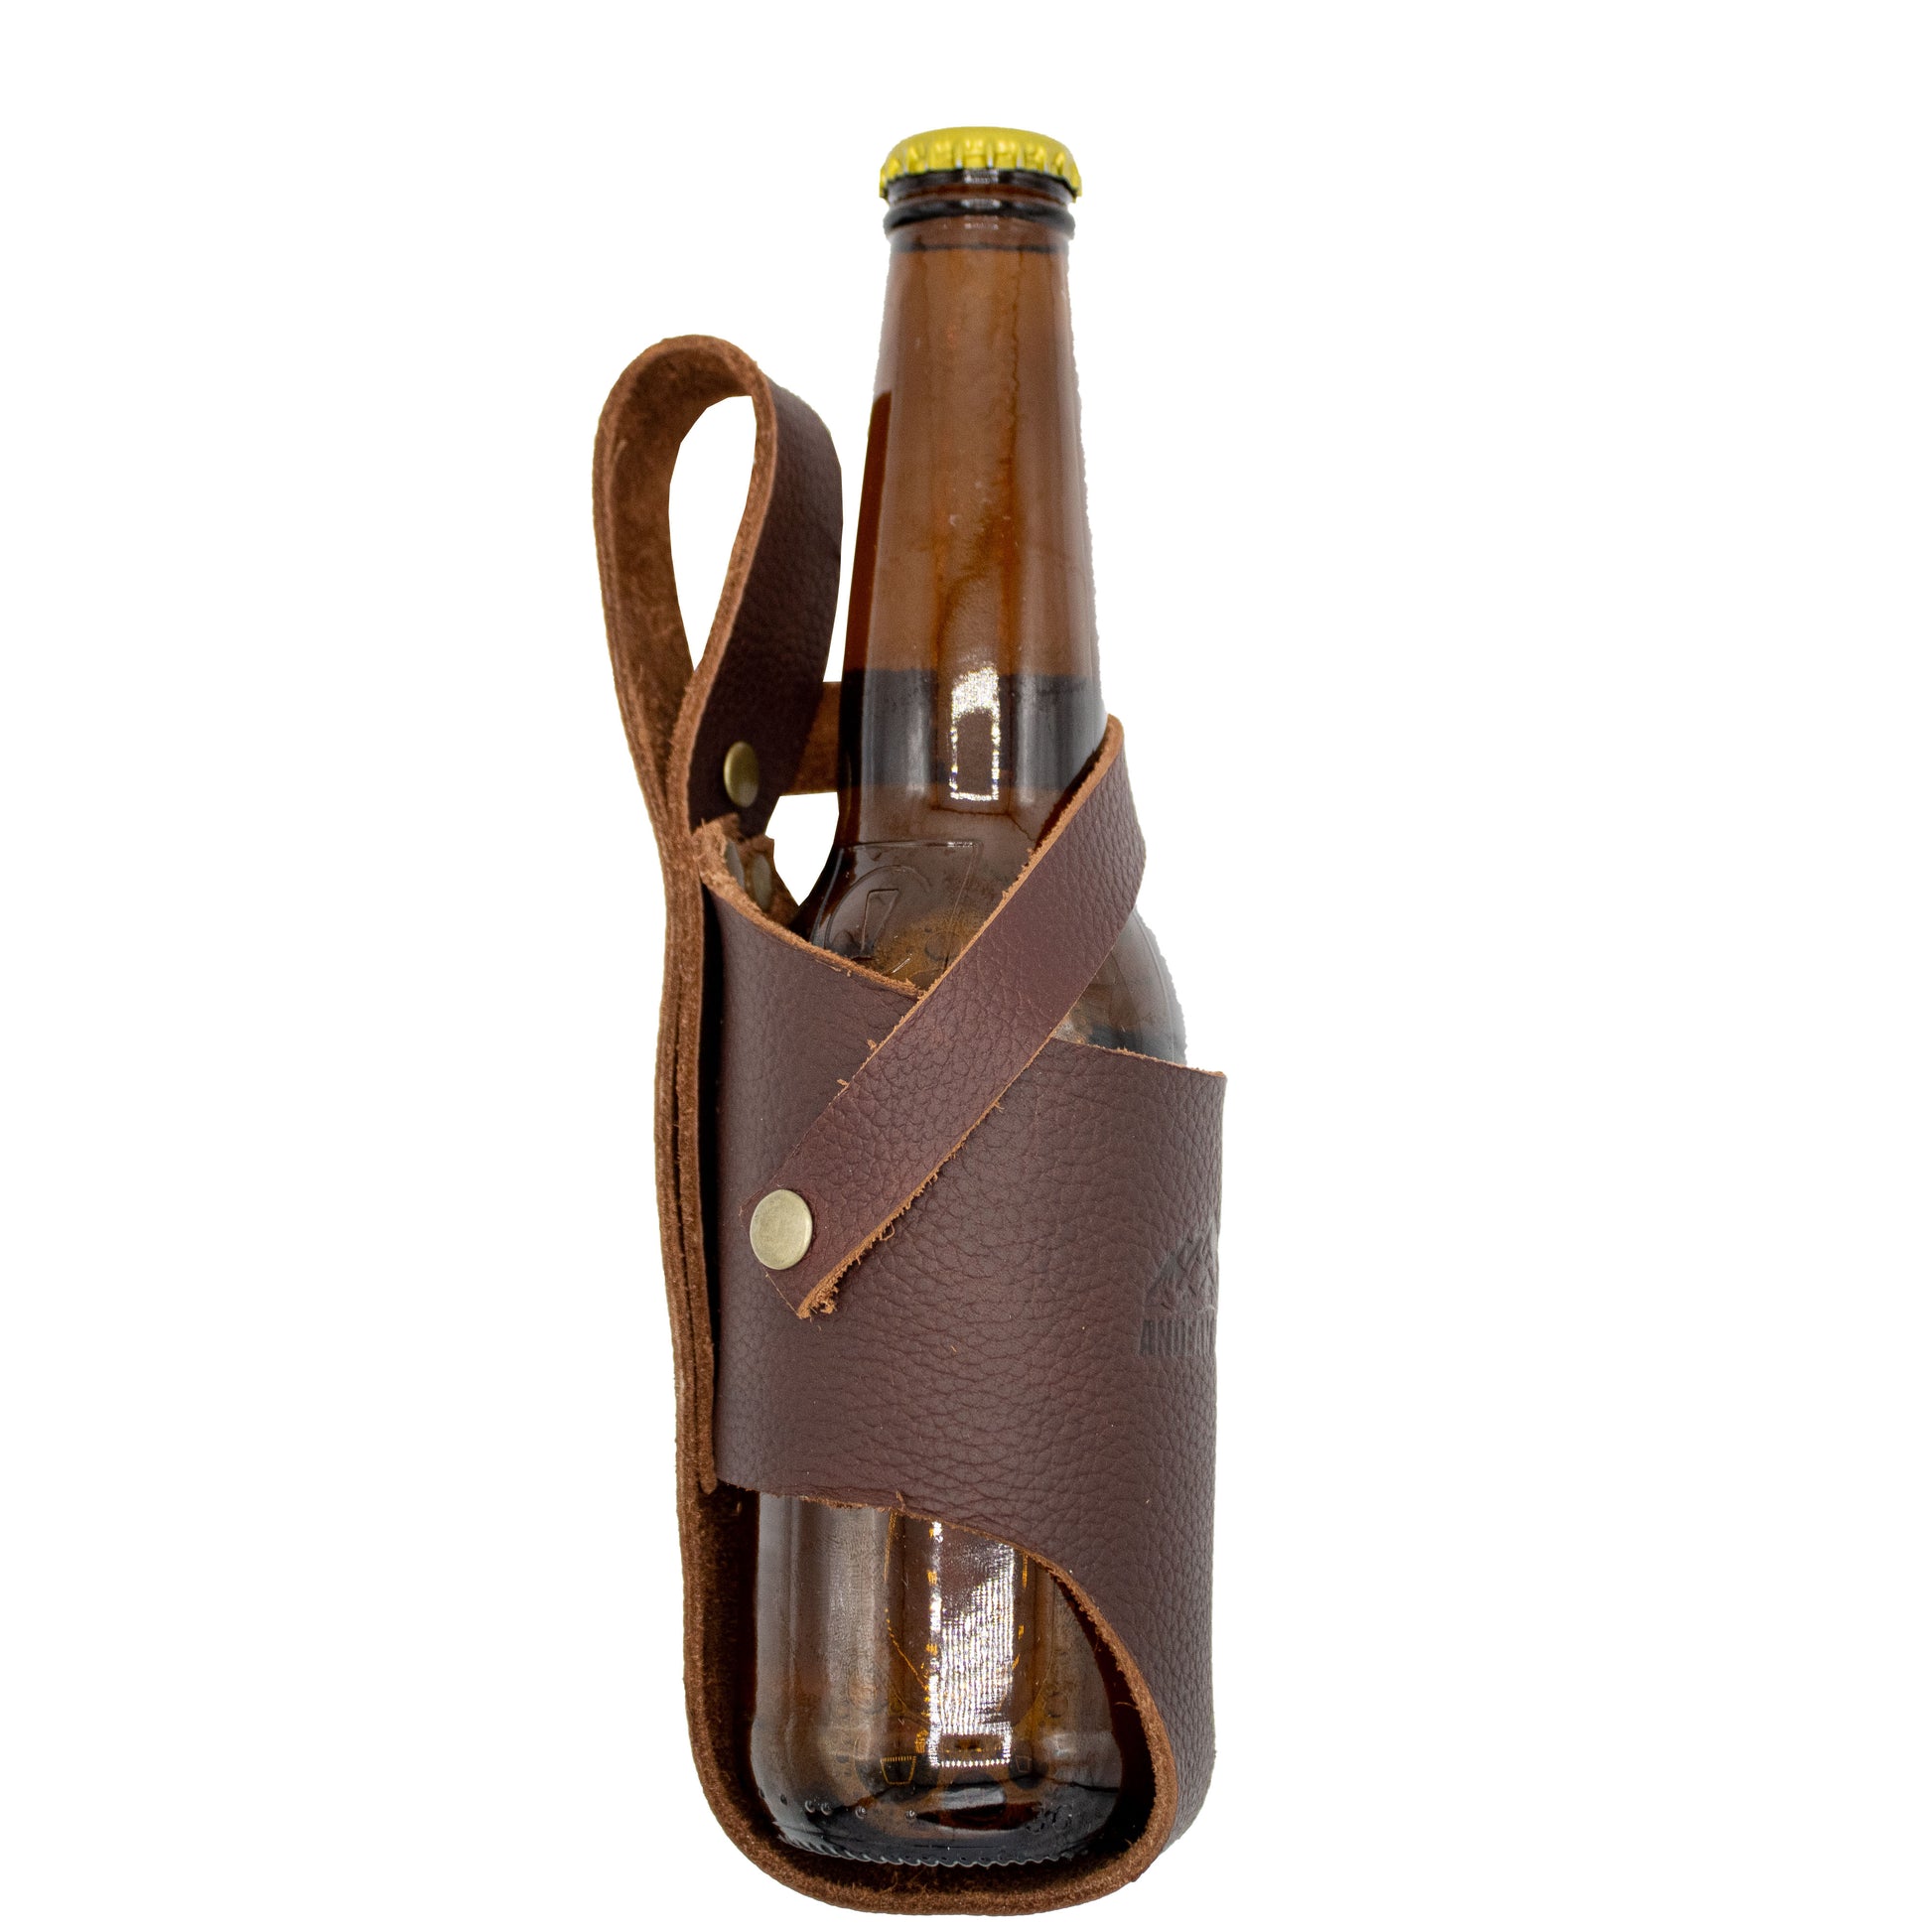 Andean Leather, Beer Holster, Beer Holder for Belt